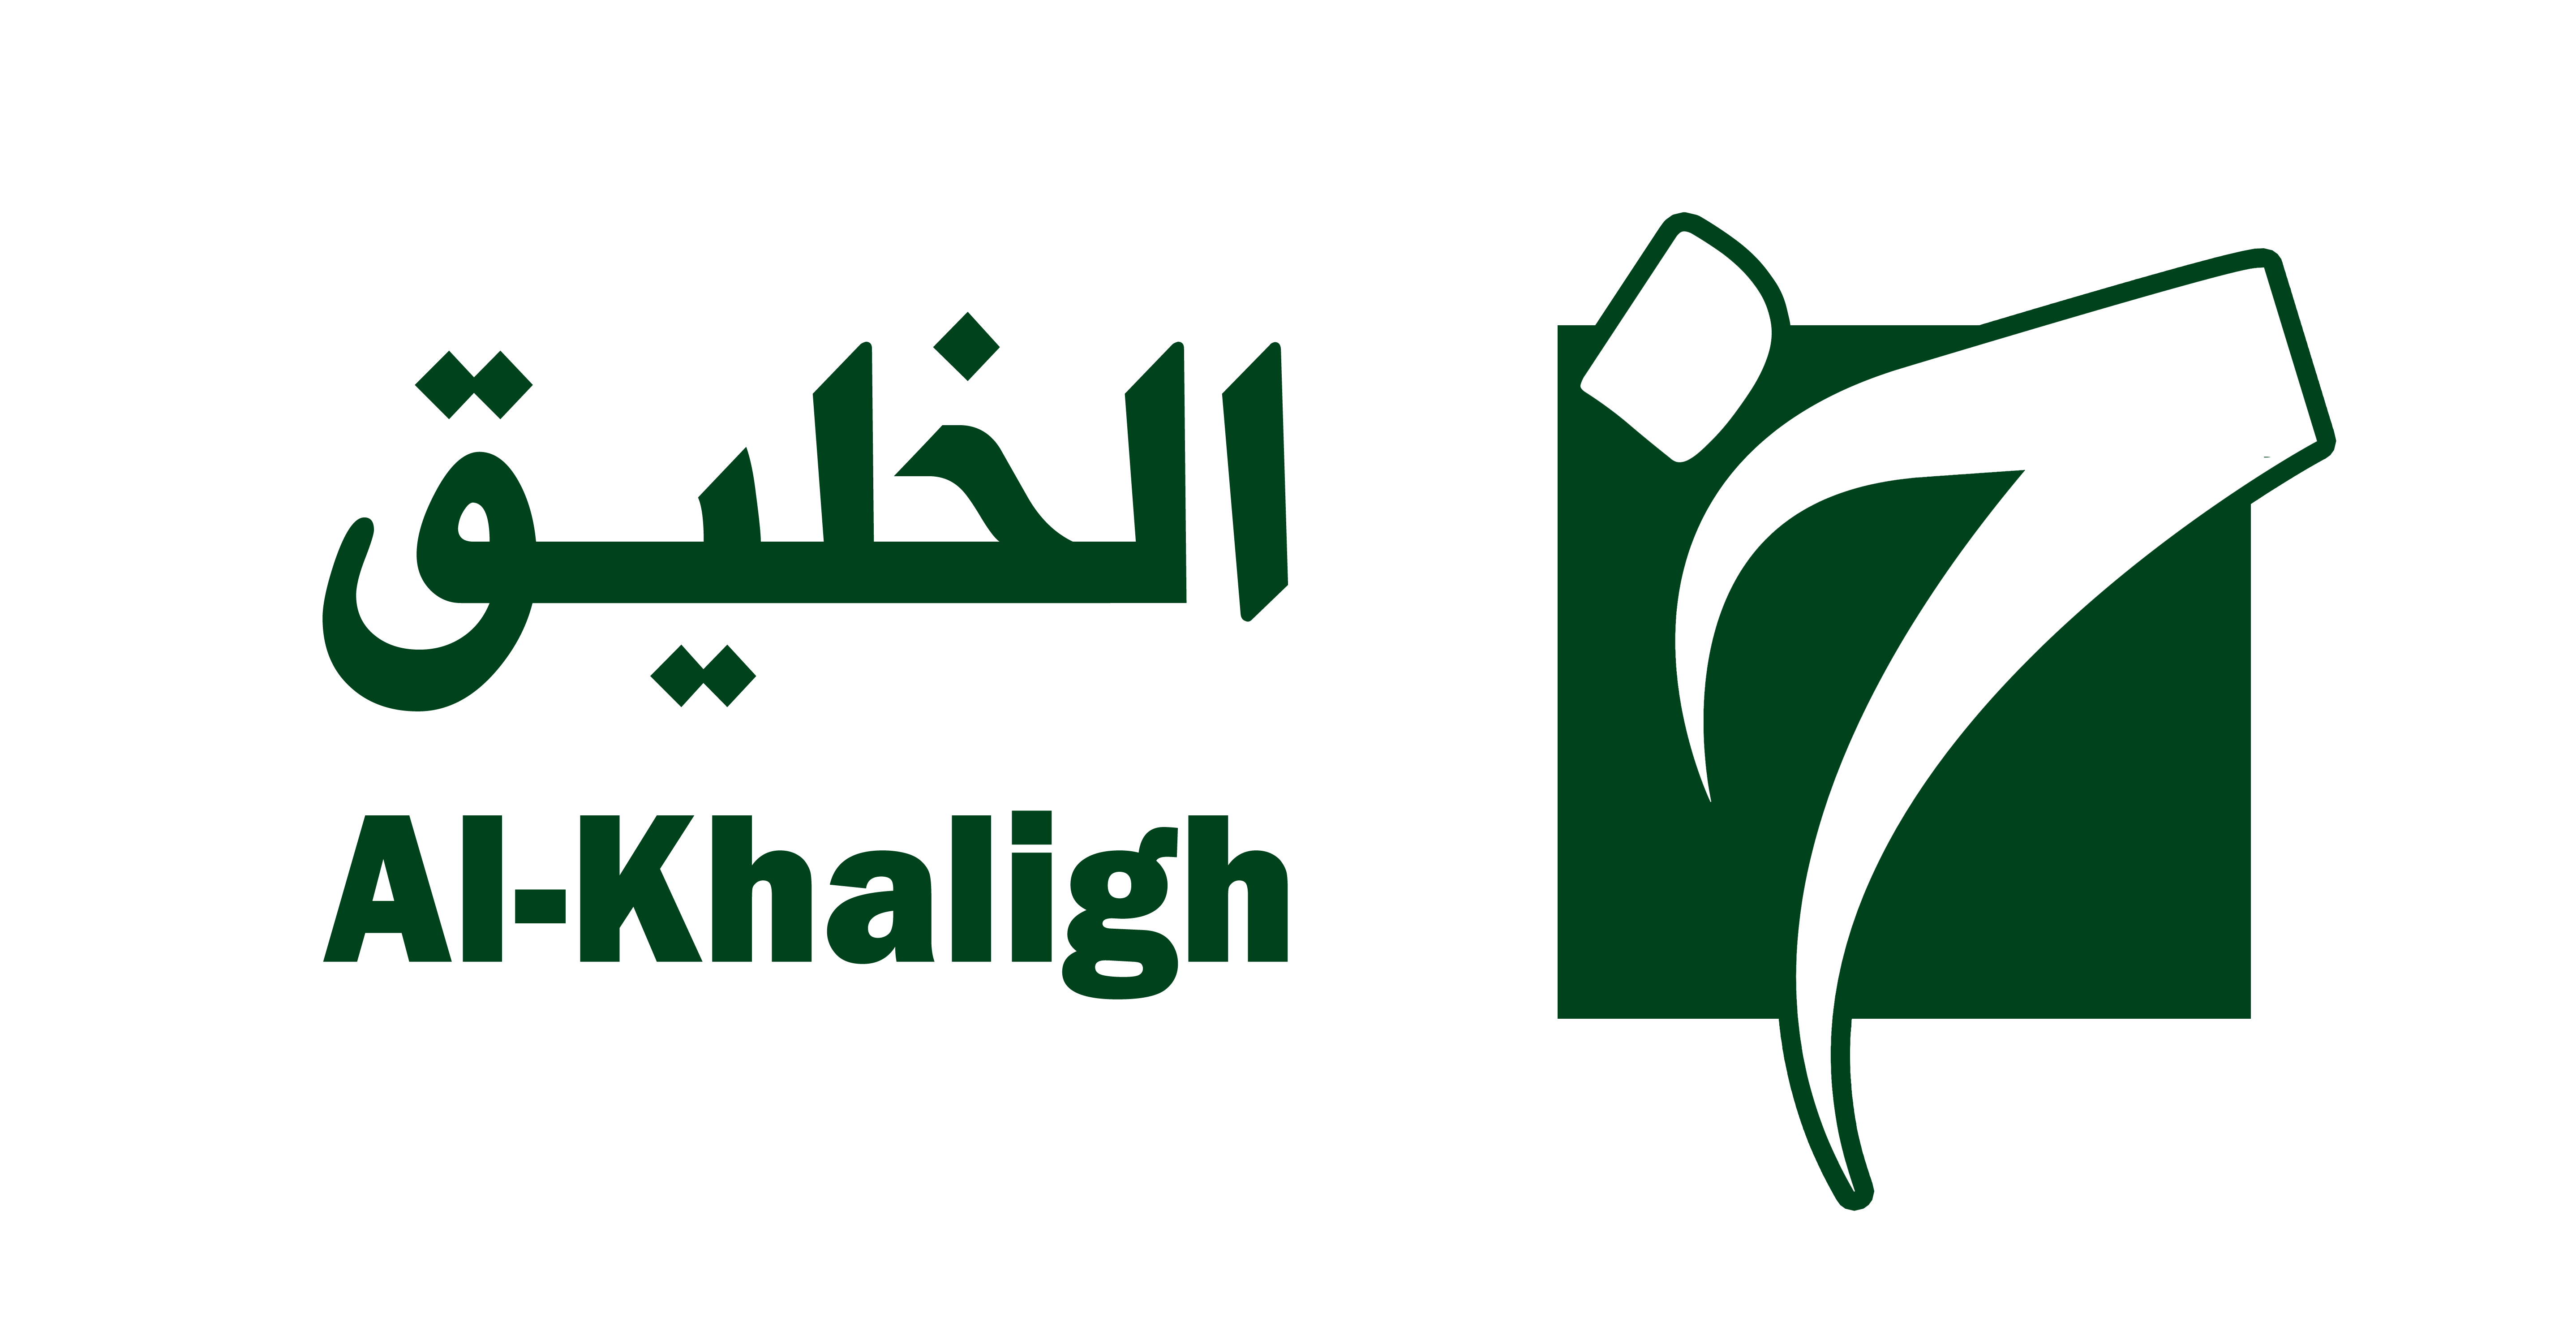 Al-Khaliqllc